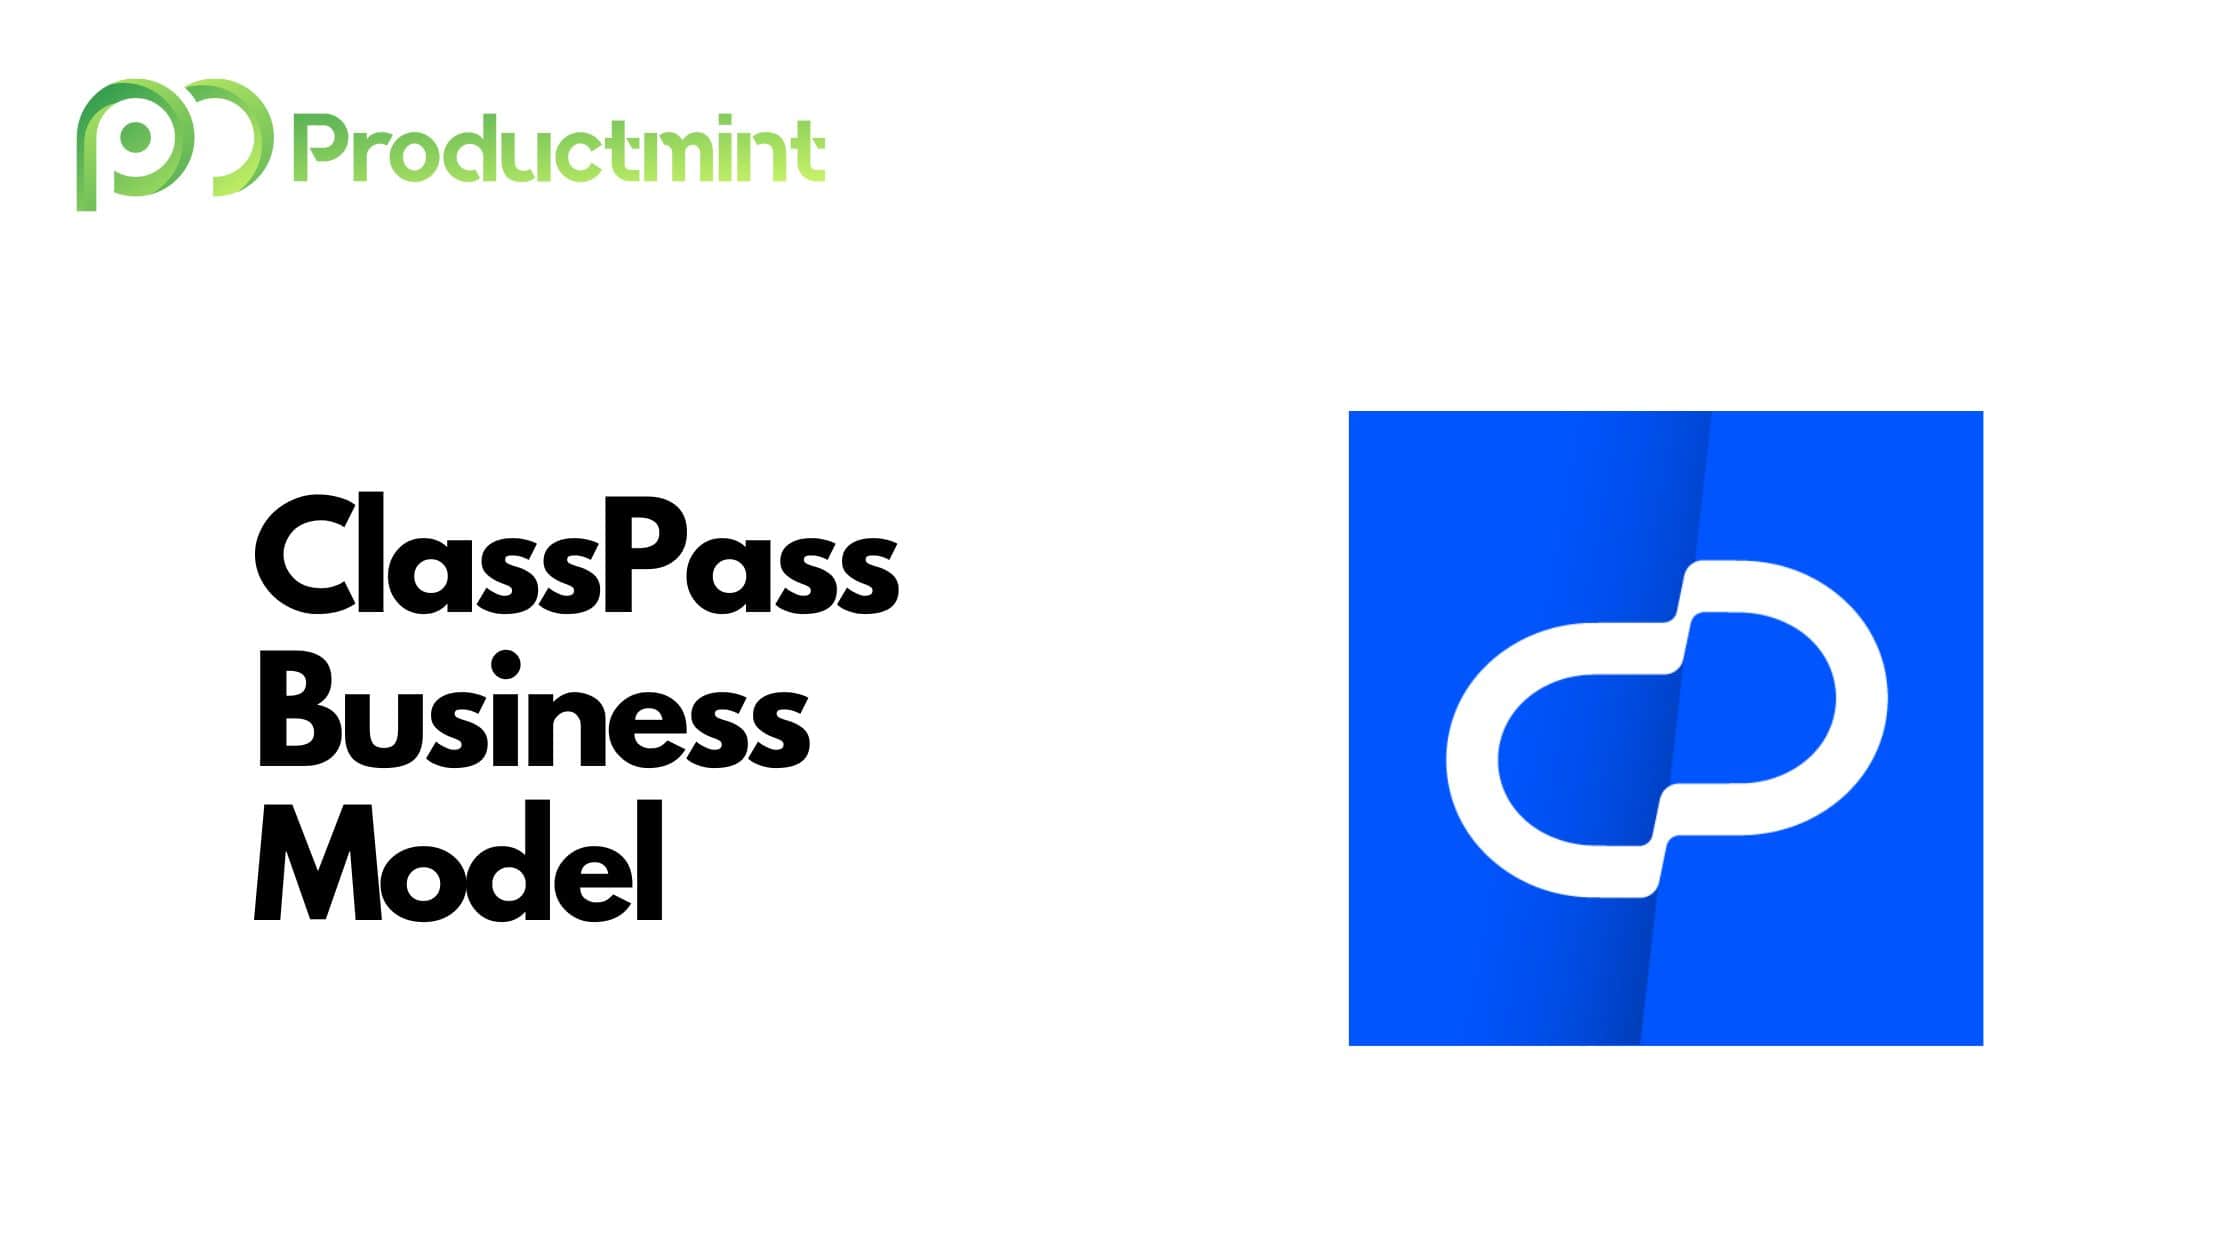 ClassPass Business Model